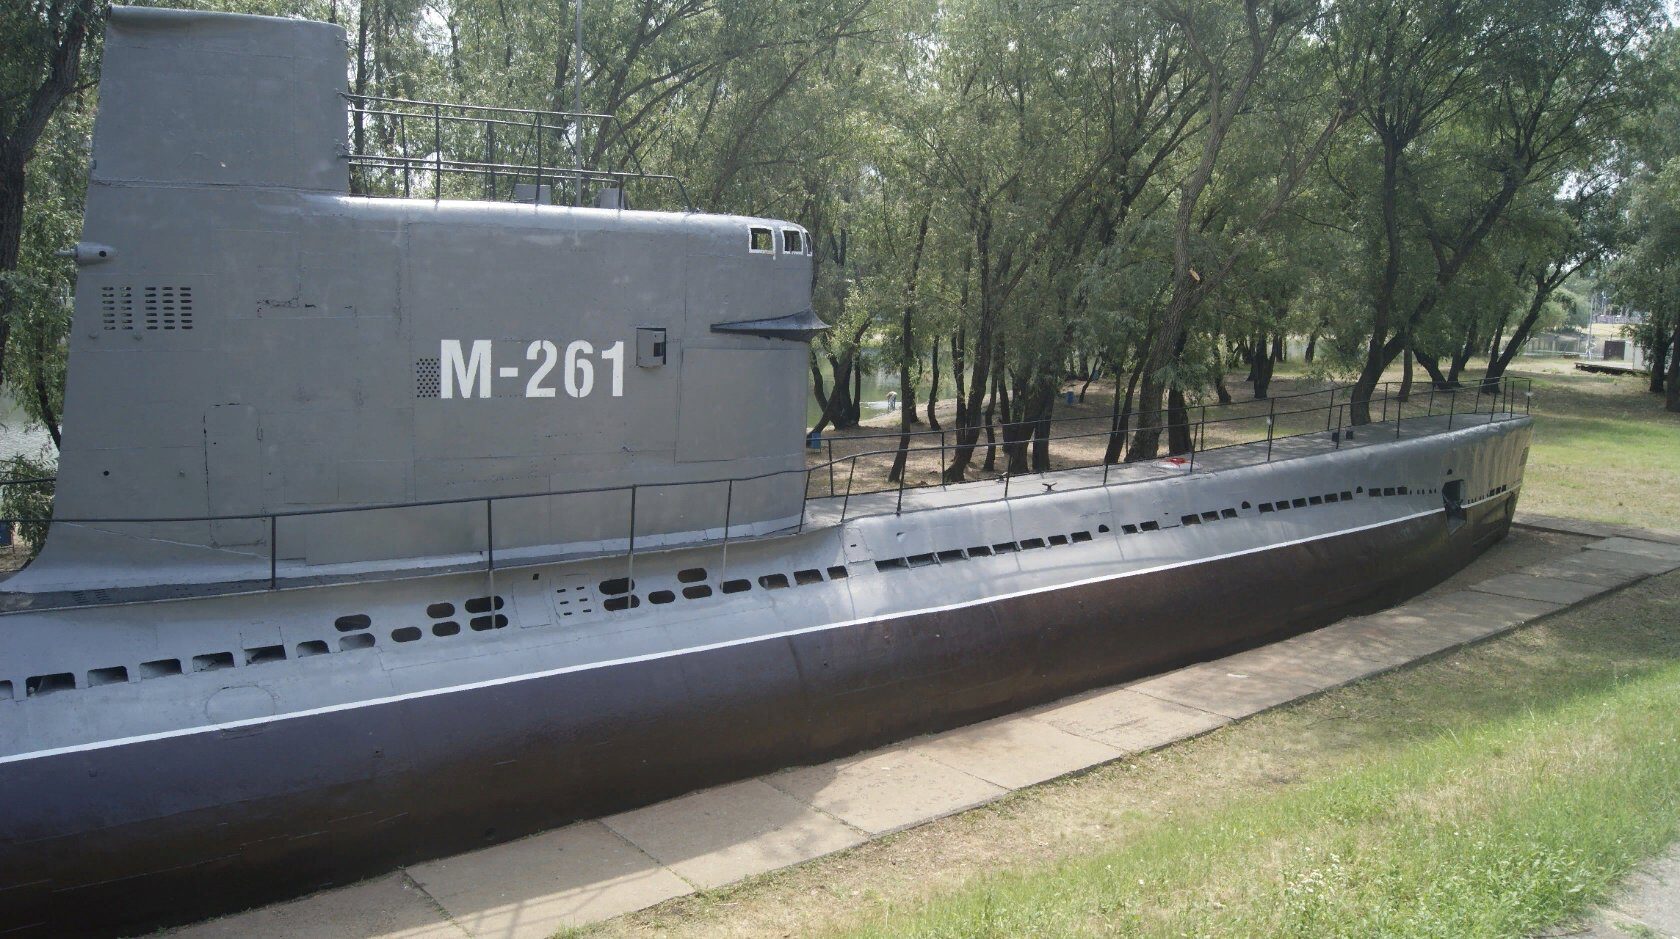 Подводные лодки с единым дизельным двигателем